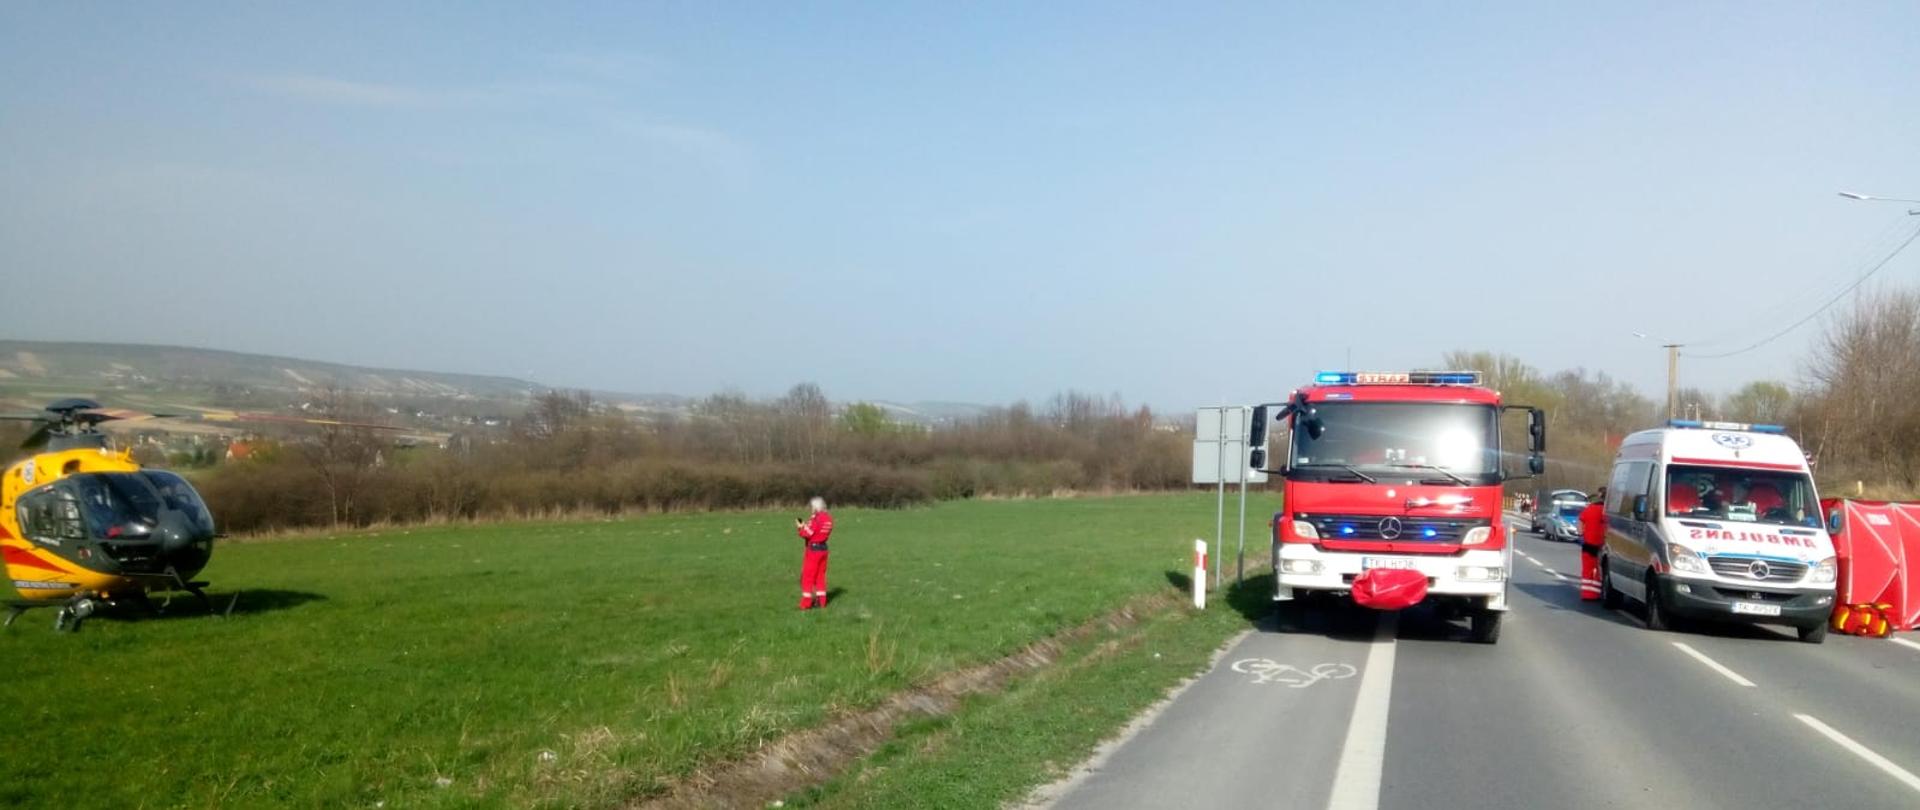 Zdjęcie przedstawia stojące na drodze wojewódzkiej samochód pożarniczy i po prawej ambulans. Za ambulansem widać rozłożony czerwony parawan osłaniający, a po lewej stronie, na pobliskiej łące wylądował helikopter do którego zbliża się ratownik.